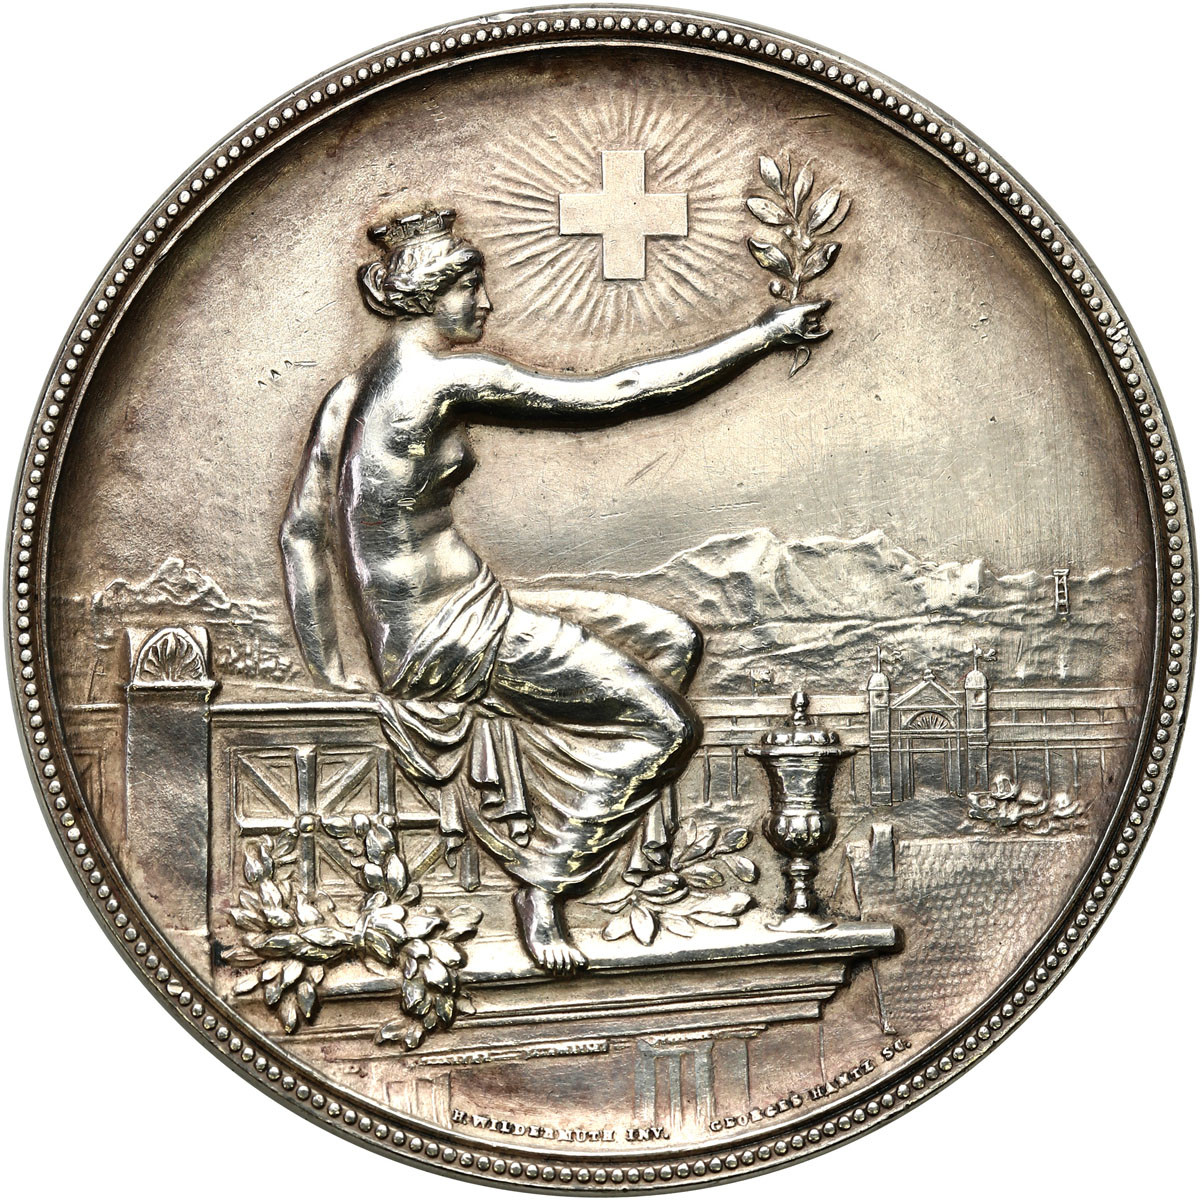 Szwajcaria. Medal Festiwal strzelecki w Winterthur 1895, Zürich.